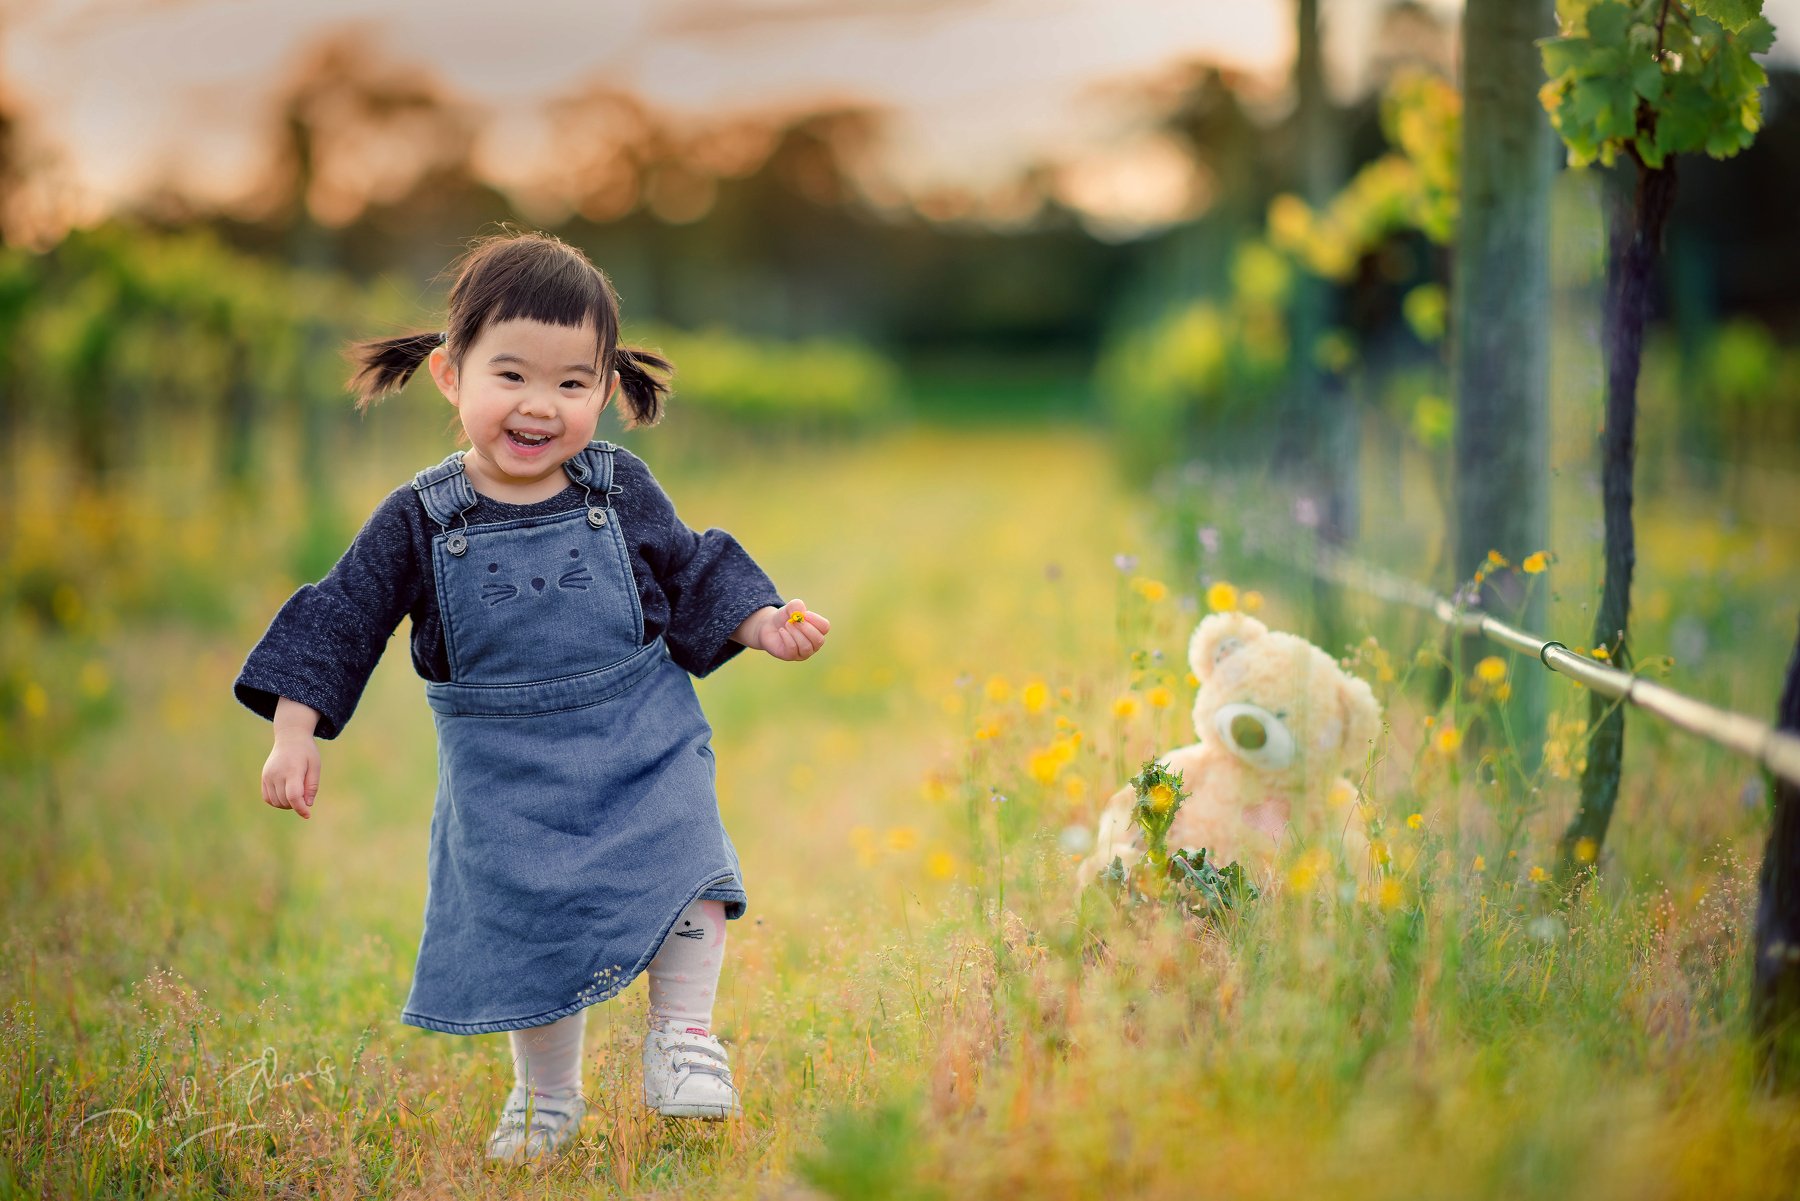 child, cute, girl, kid, vineyard, field, outdoor, Derek Zhang